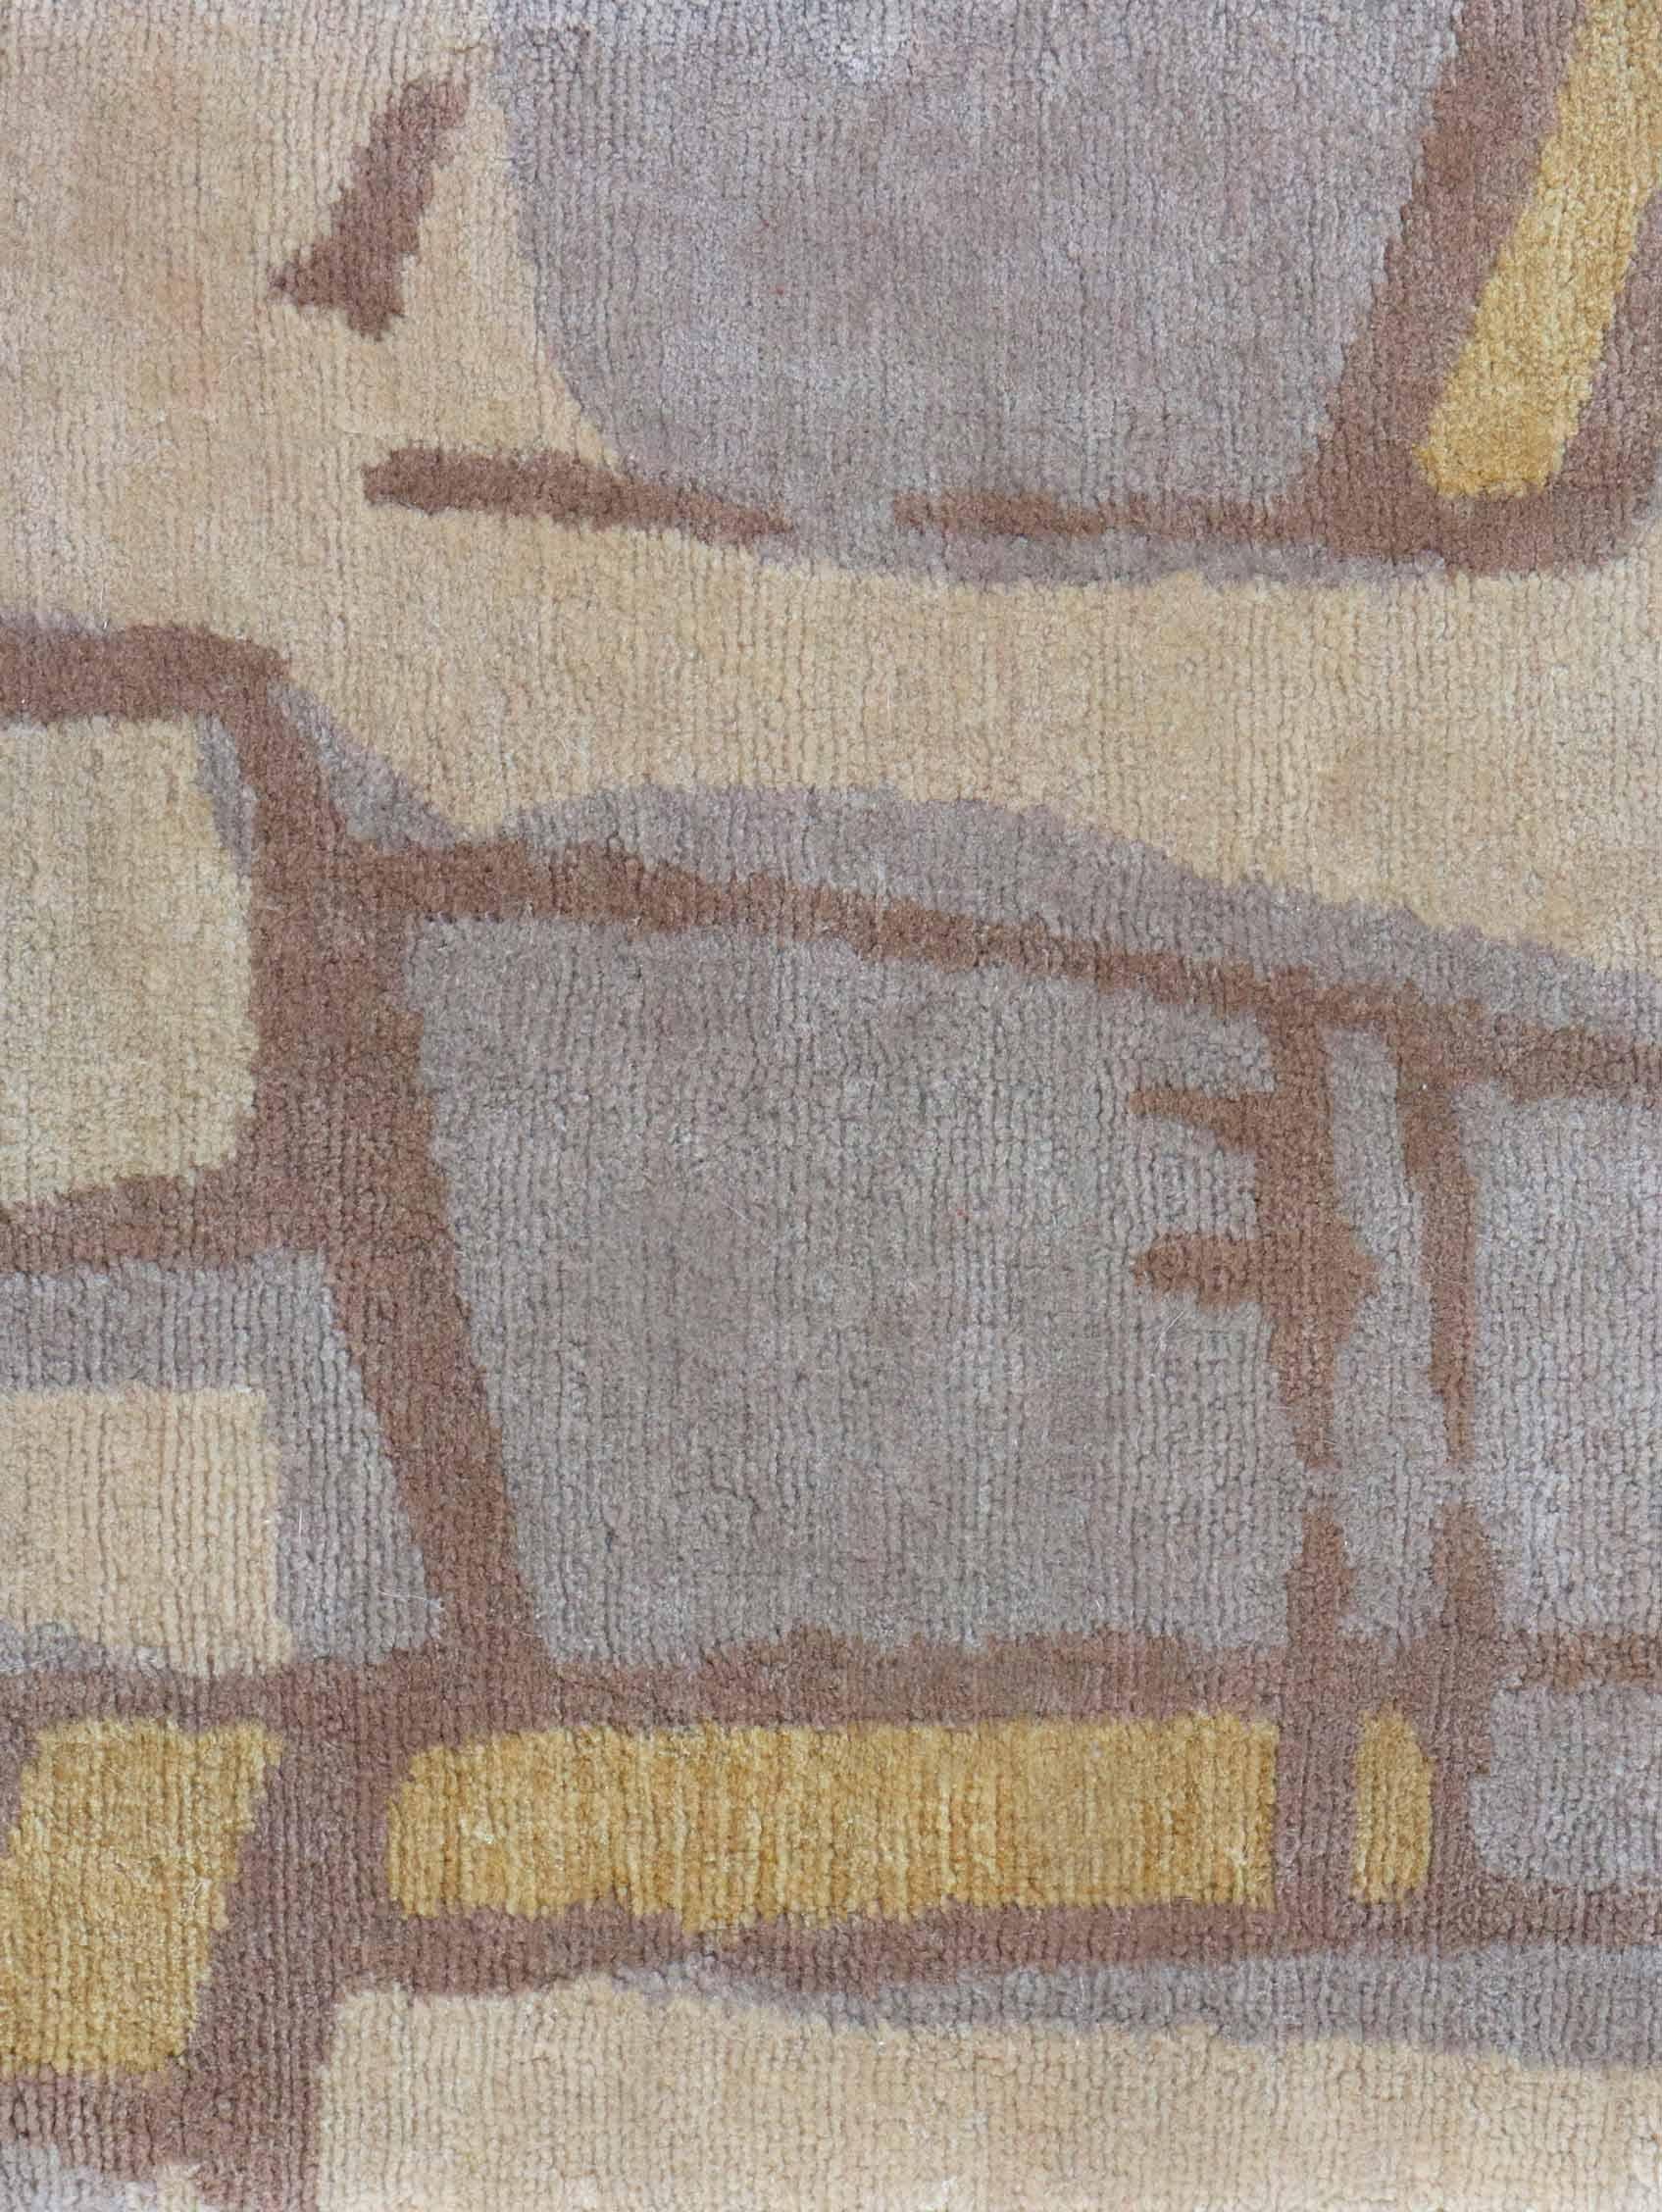 Muster des Teppichs: Quotidiana - Ilios
MATERIAL: 100% Merinowolle
Qualität: Tibetisches Kreuzgeflecht, handgewebt 
Größe: 8'-0